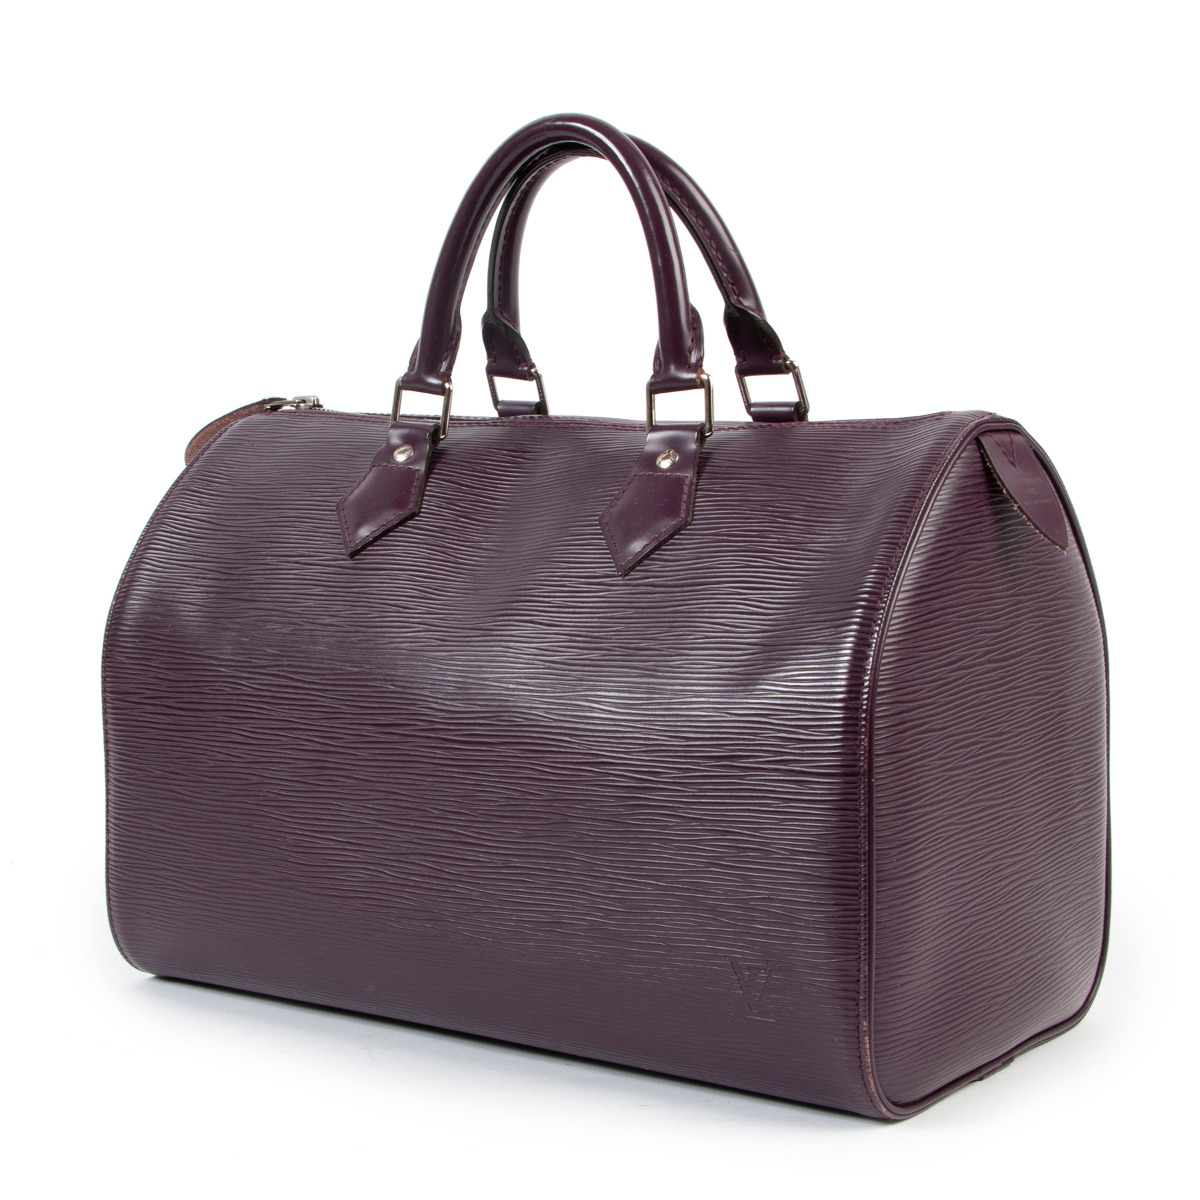 Sold at Auction: Louis Vuitton, Louis Vuitton Cassis Epi Leather